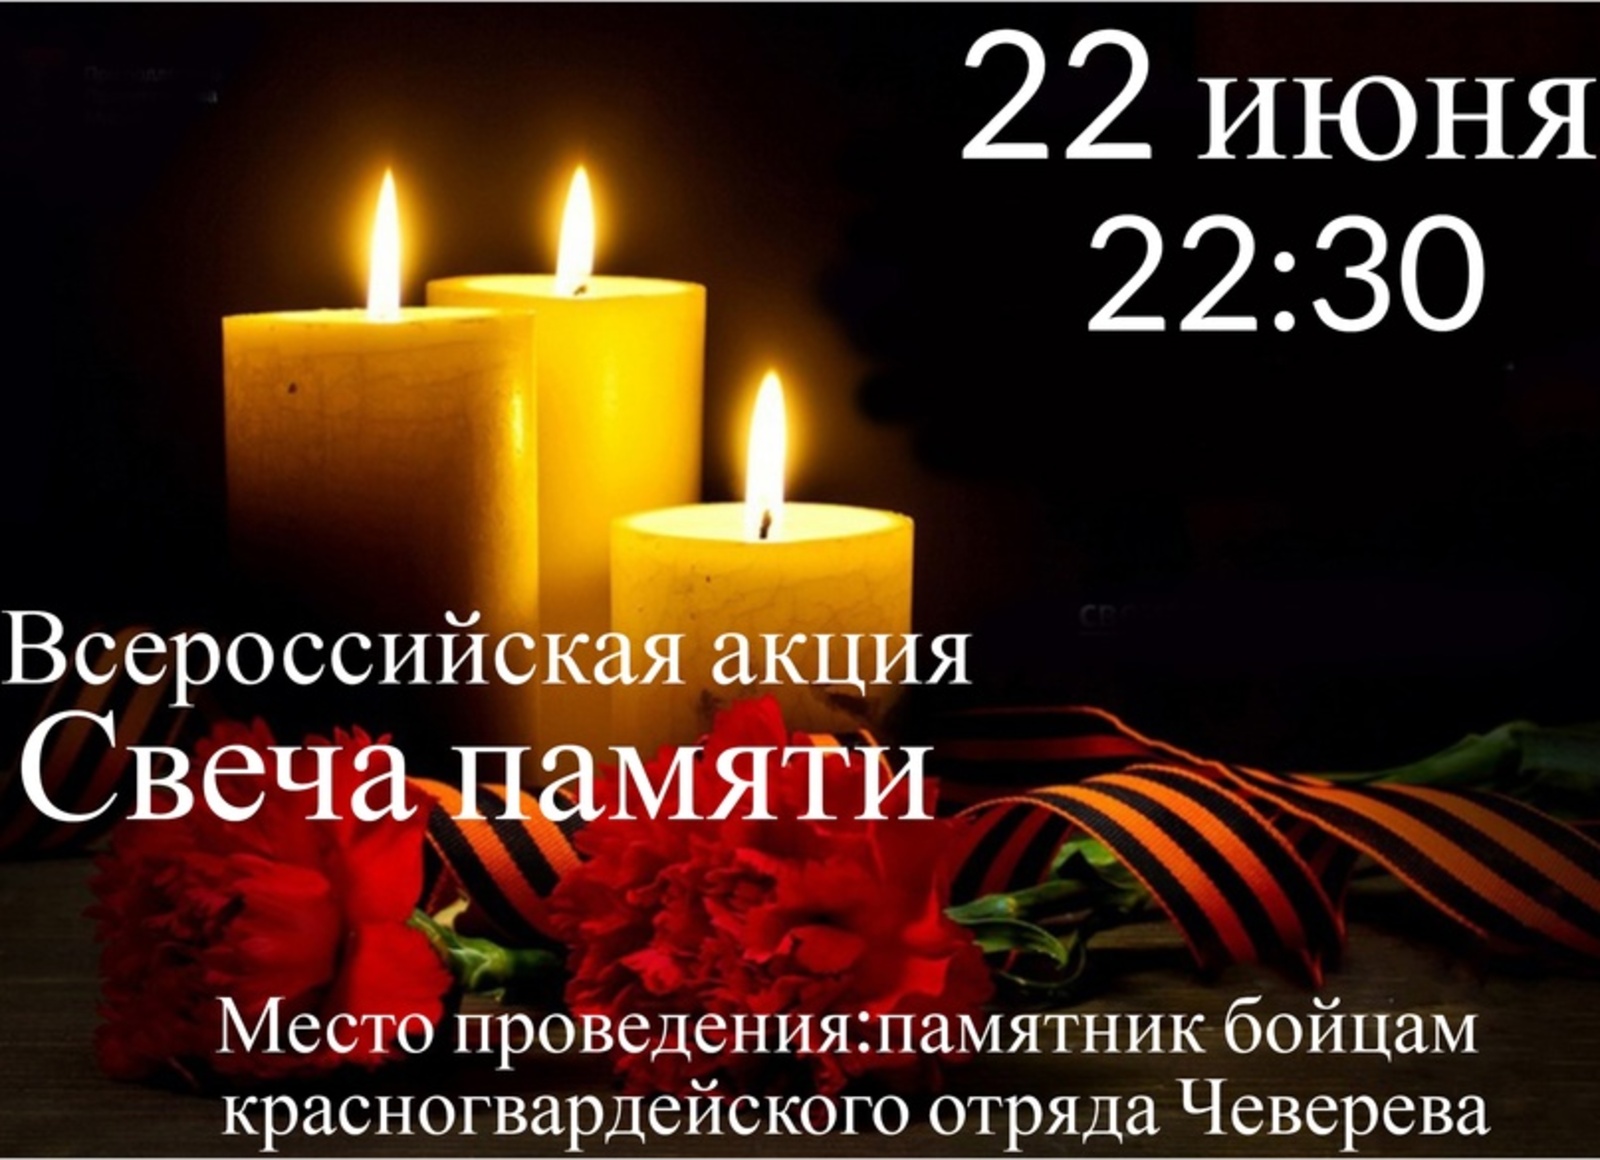 Приглашаем дюртюлинцев принять участие во Всероссийской акции "Свеча памяти"